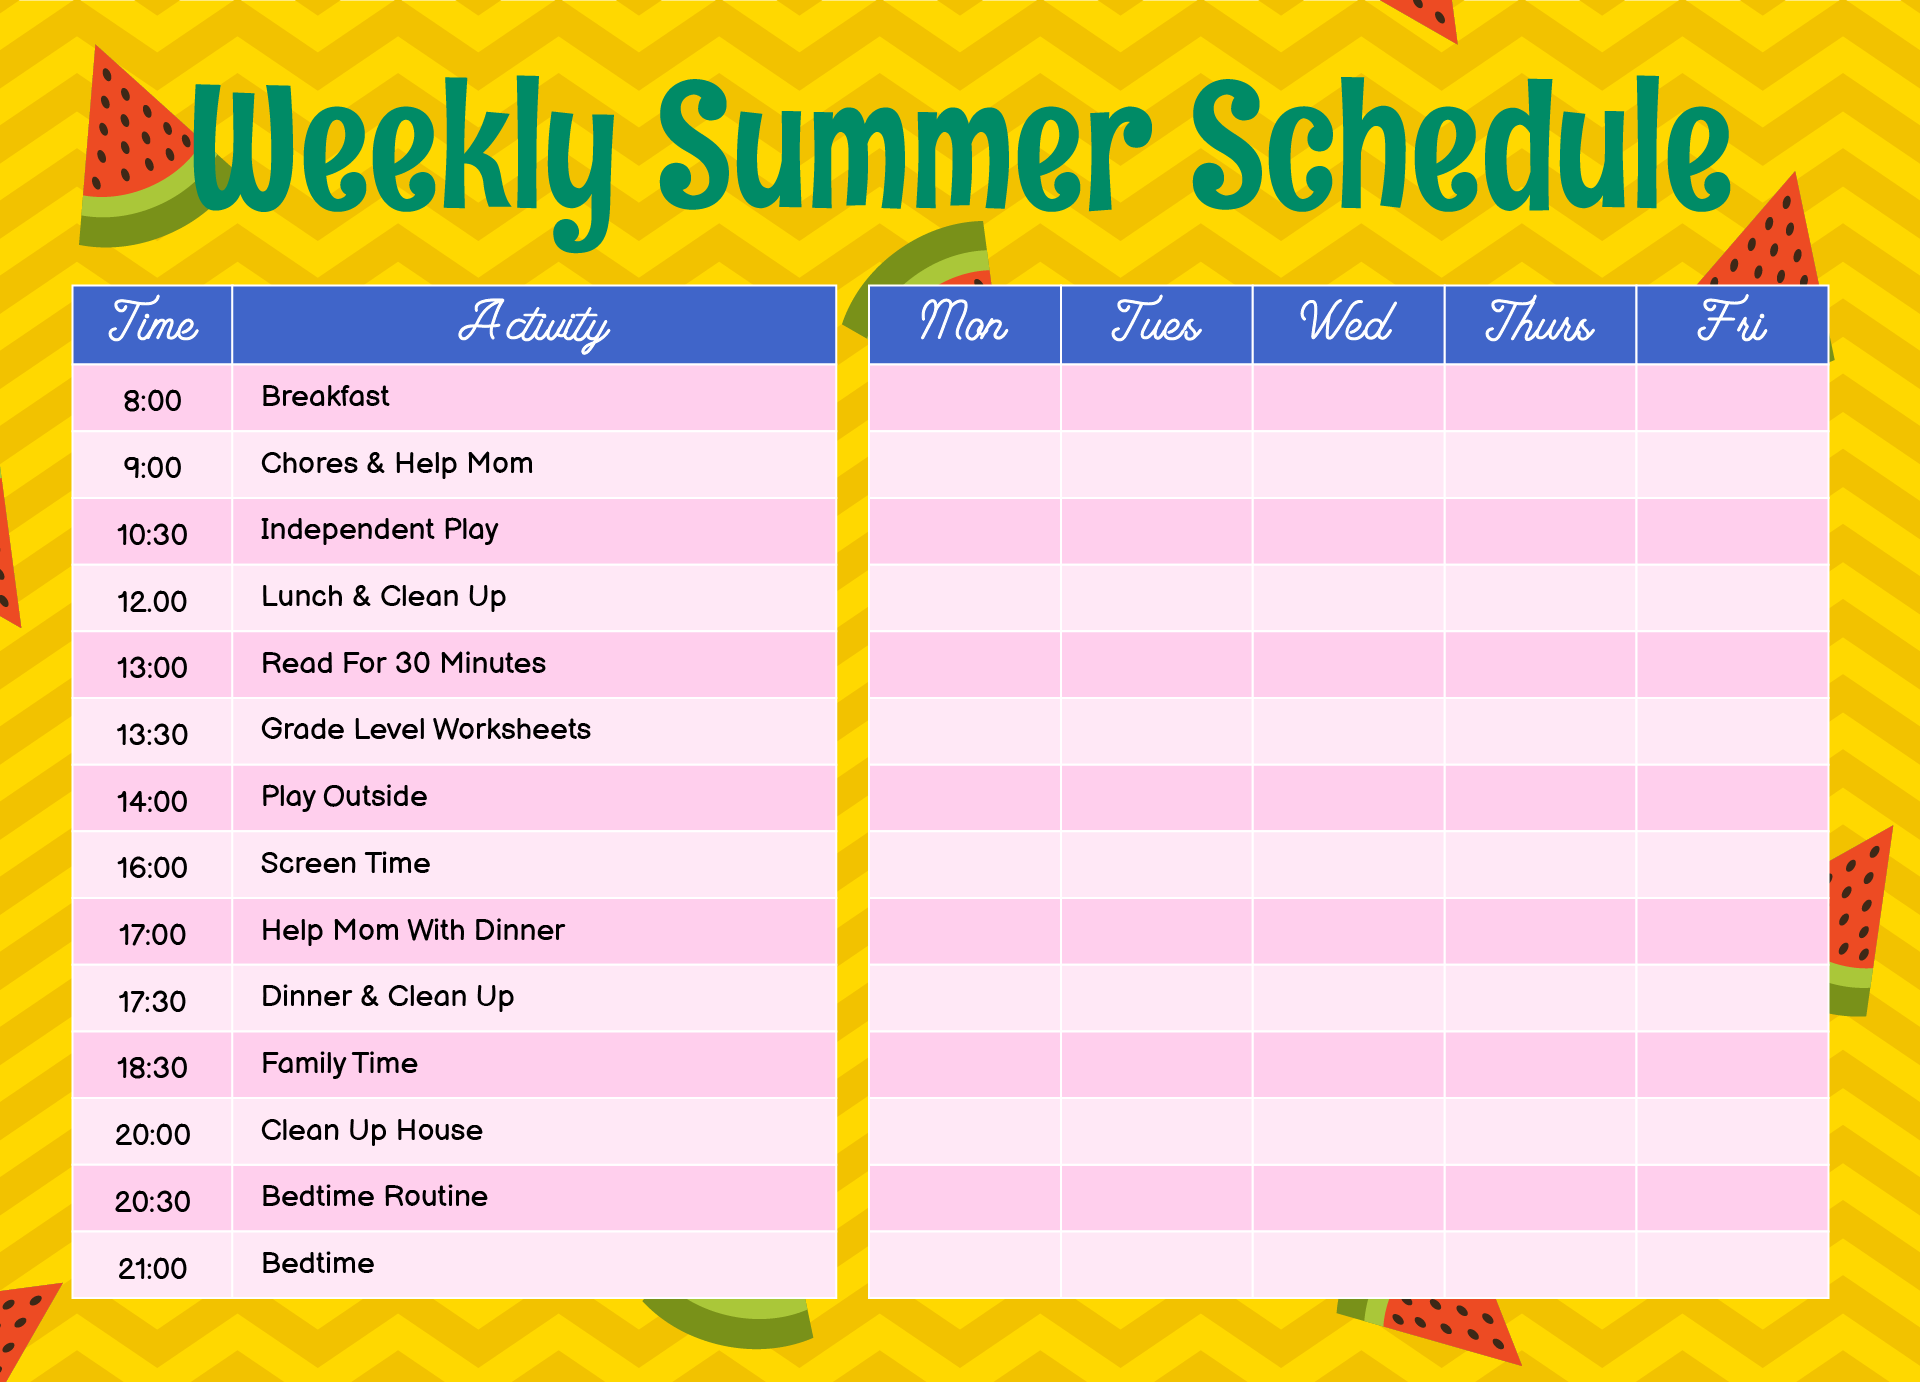 Summer Schedule